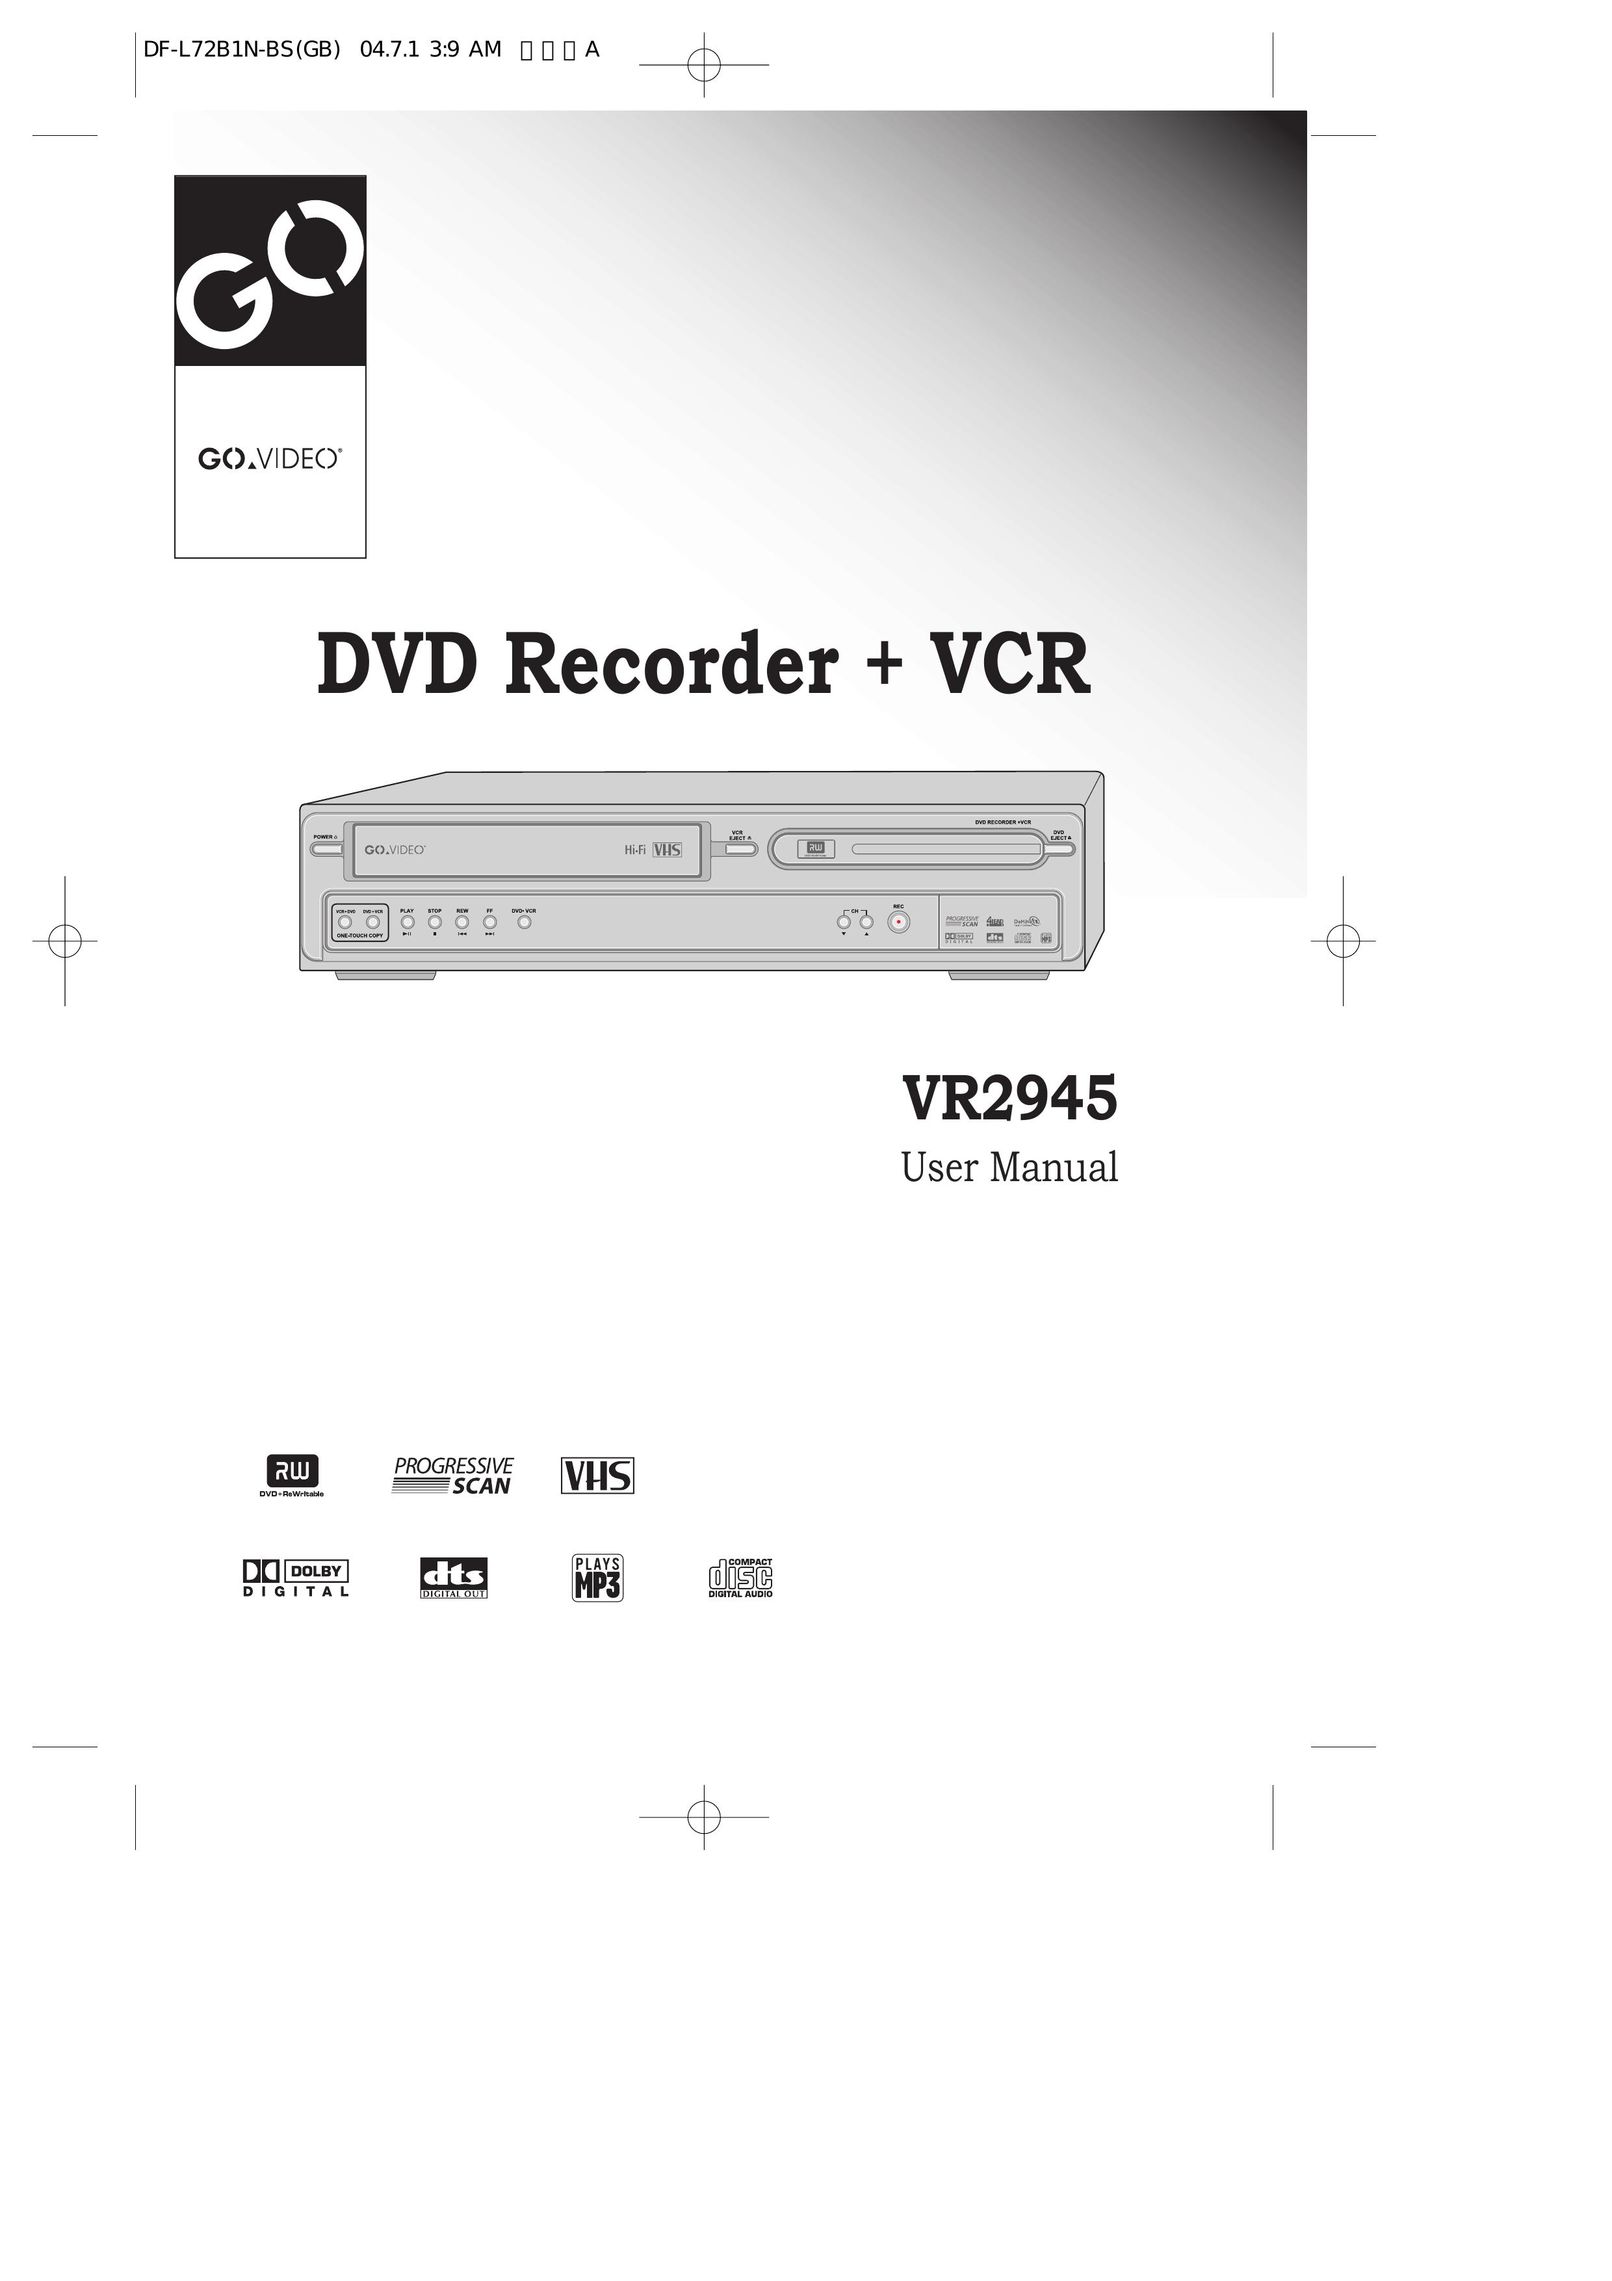 Go-Video VR2945 DVR User Manual